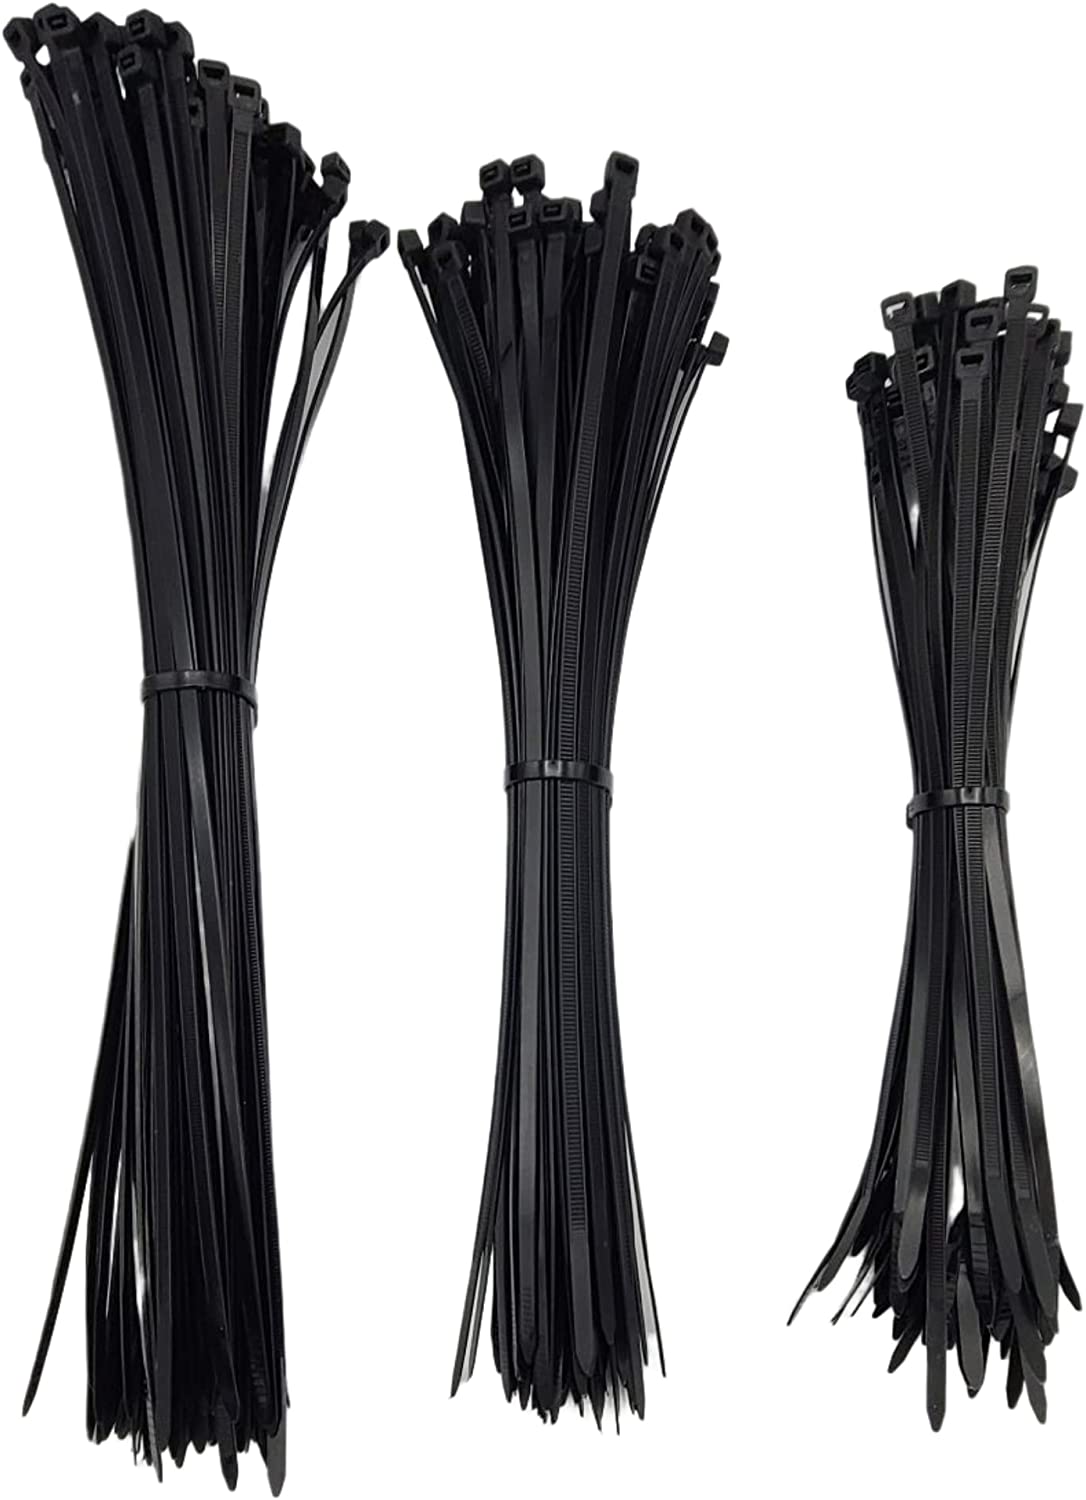 Zap Straps Black Nylon Cable Ties 100CT